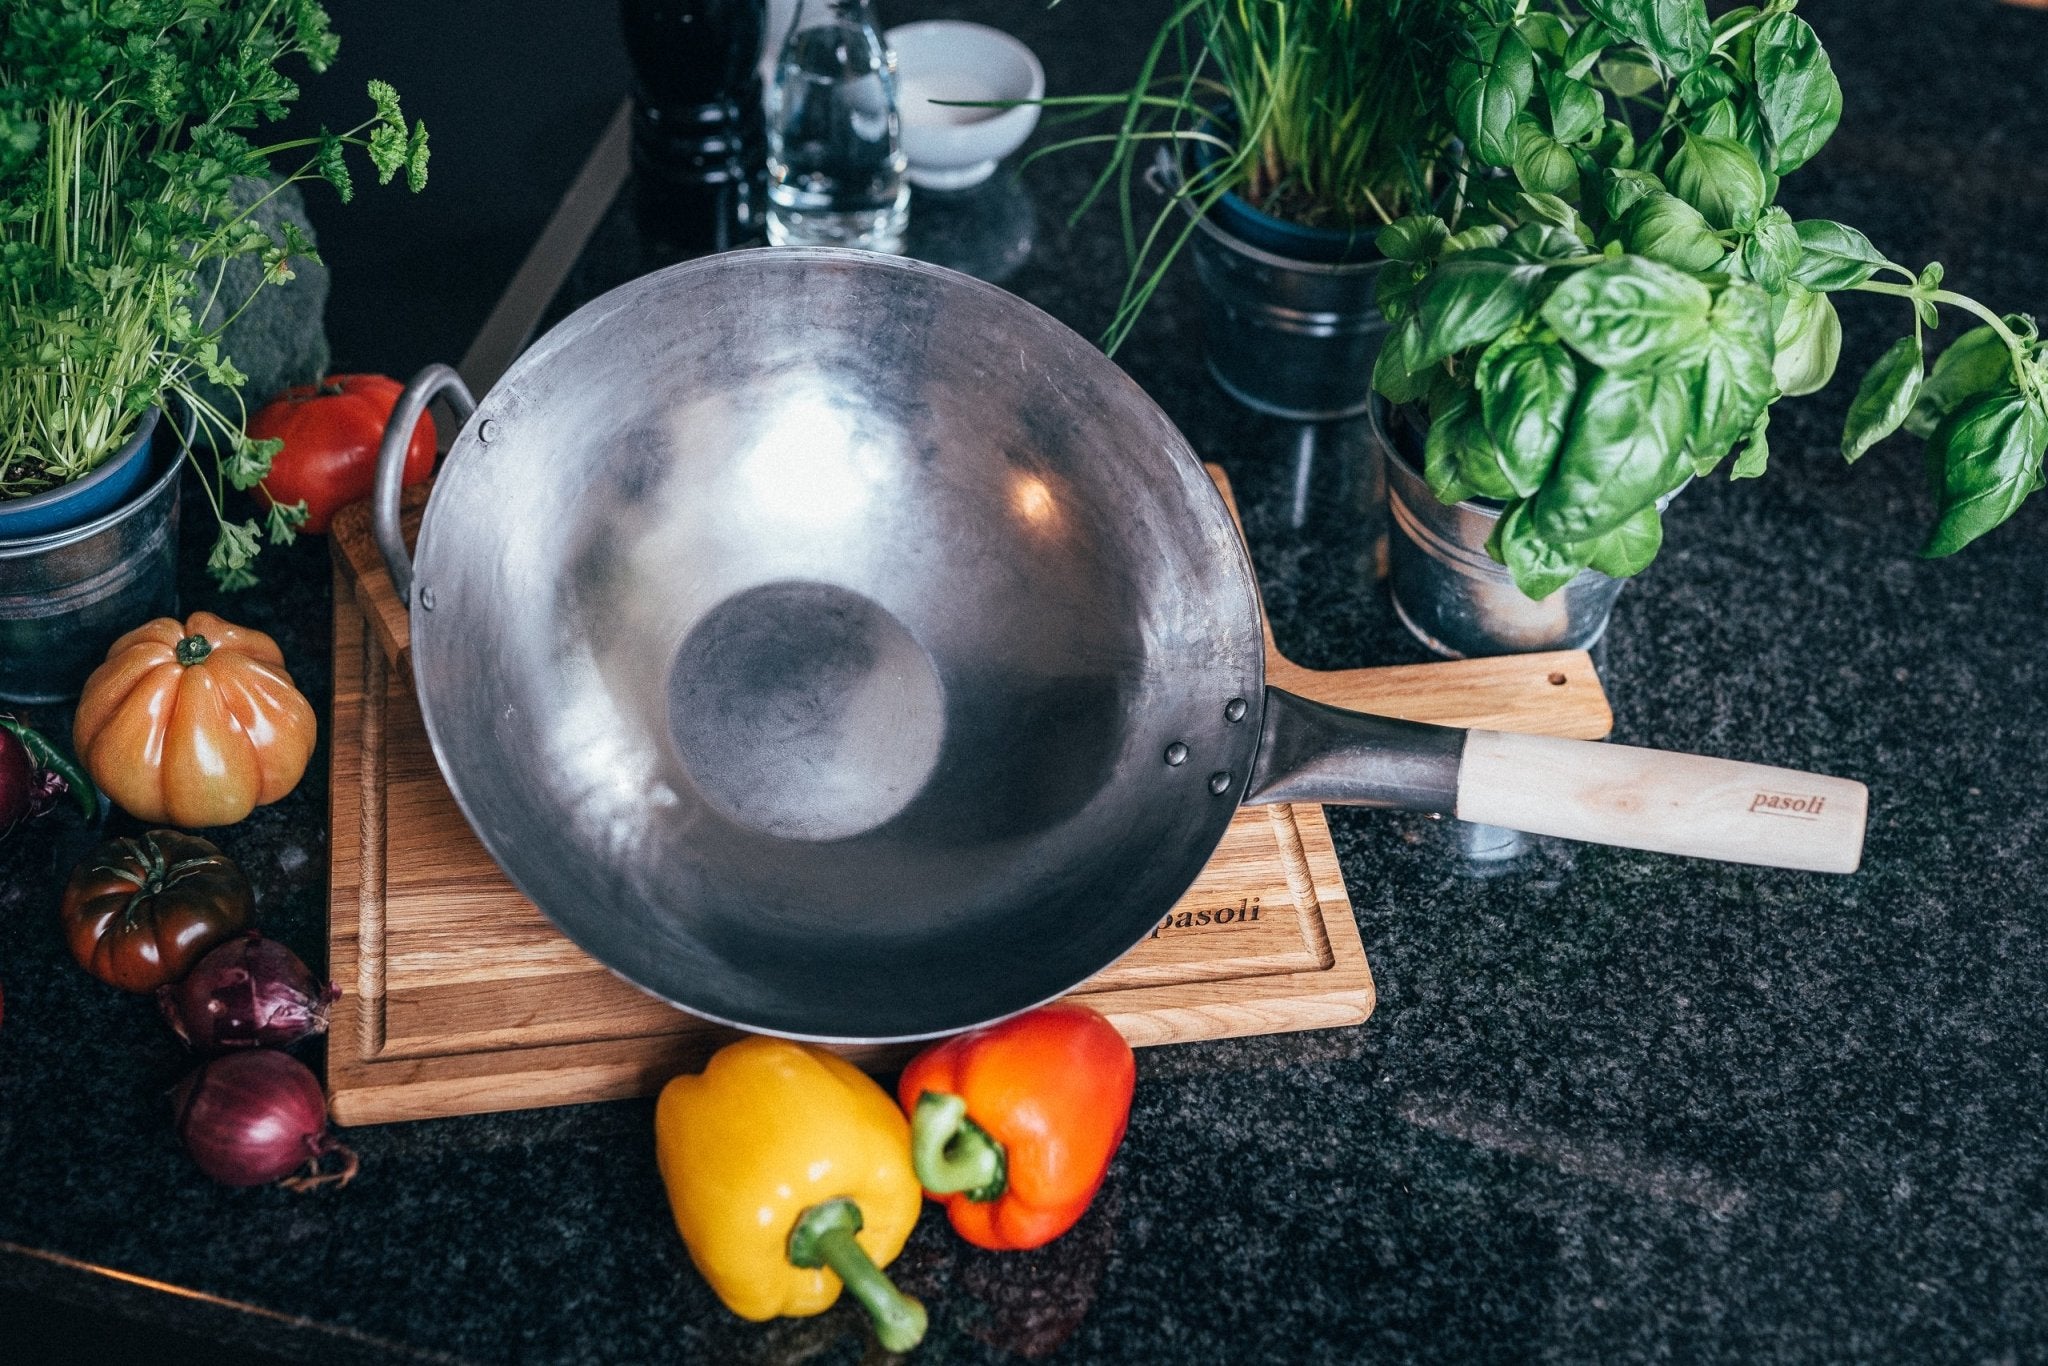 ¿Qué debo tener en cuenta al limpiar mi wok? - pasolí